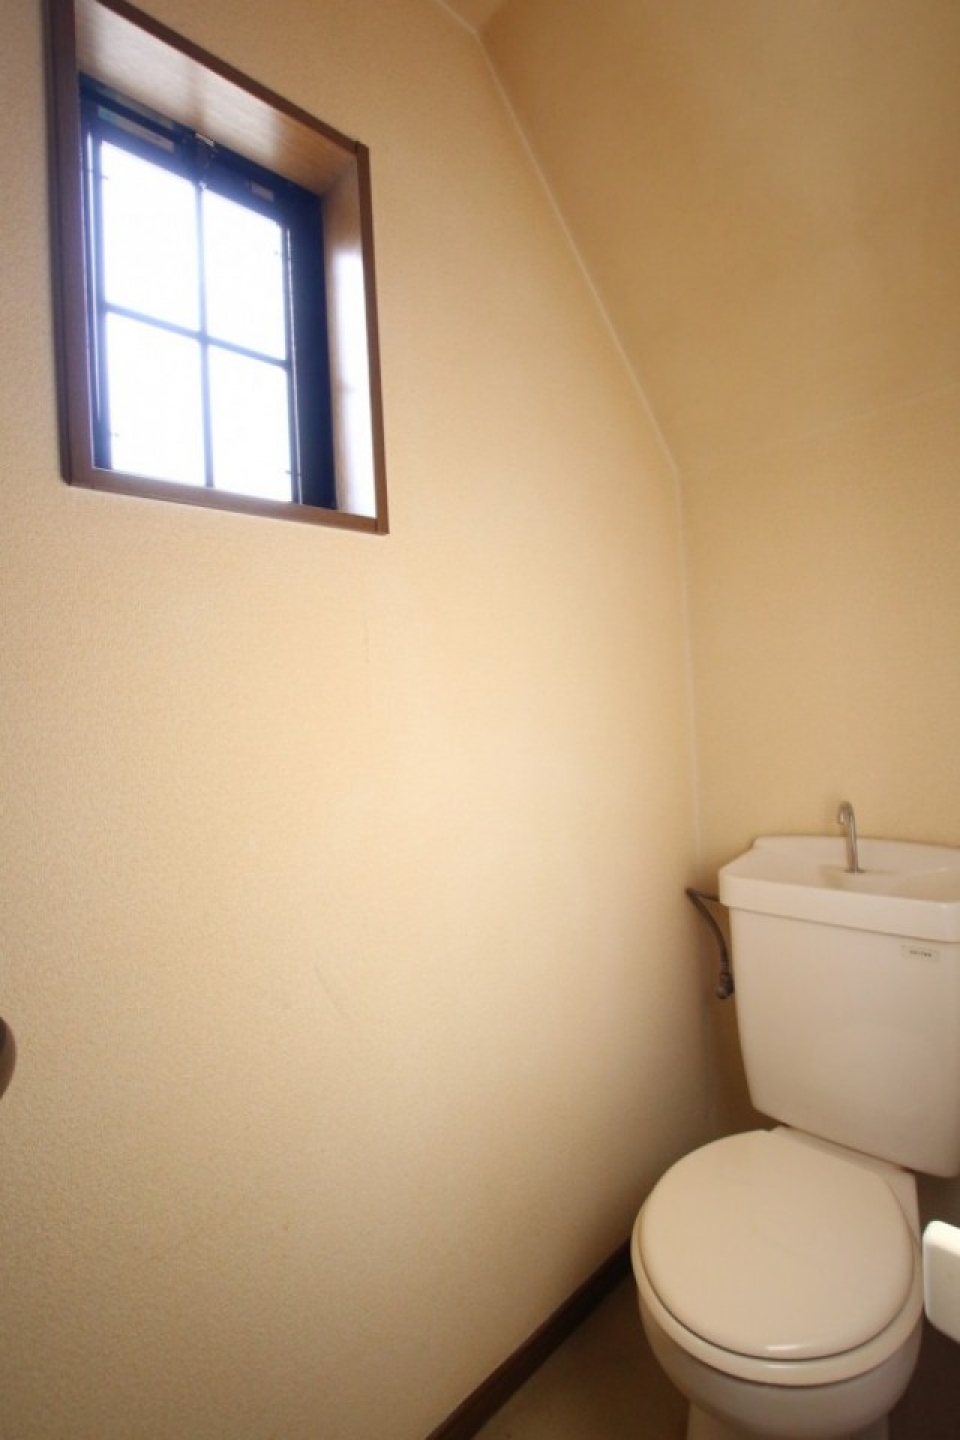 トイレの採光窓も格子状。